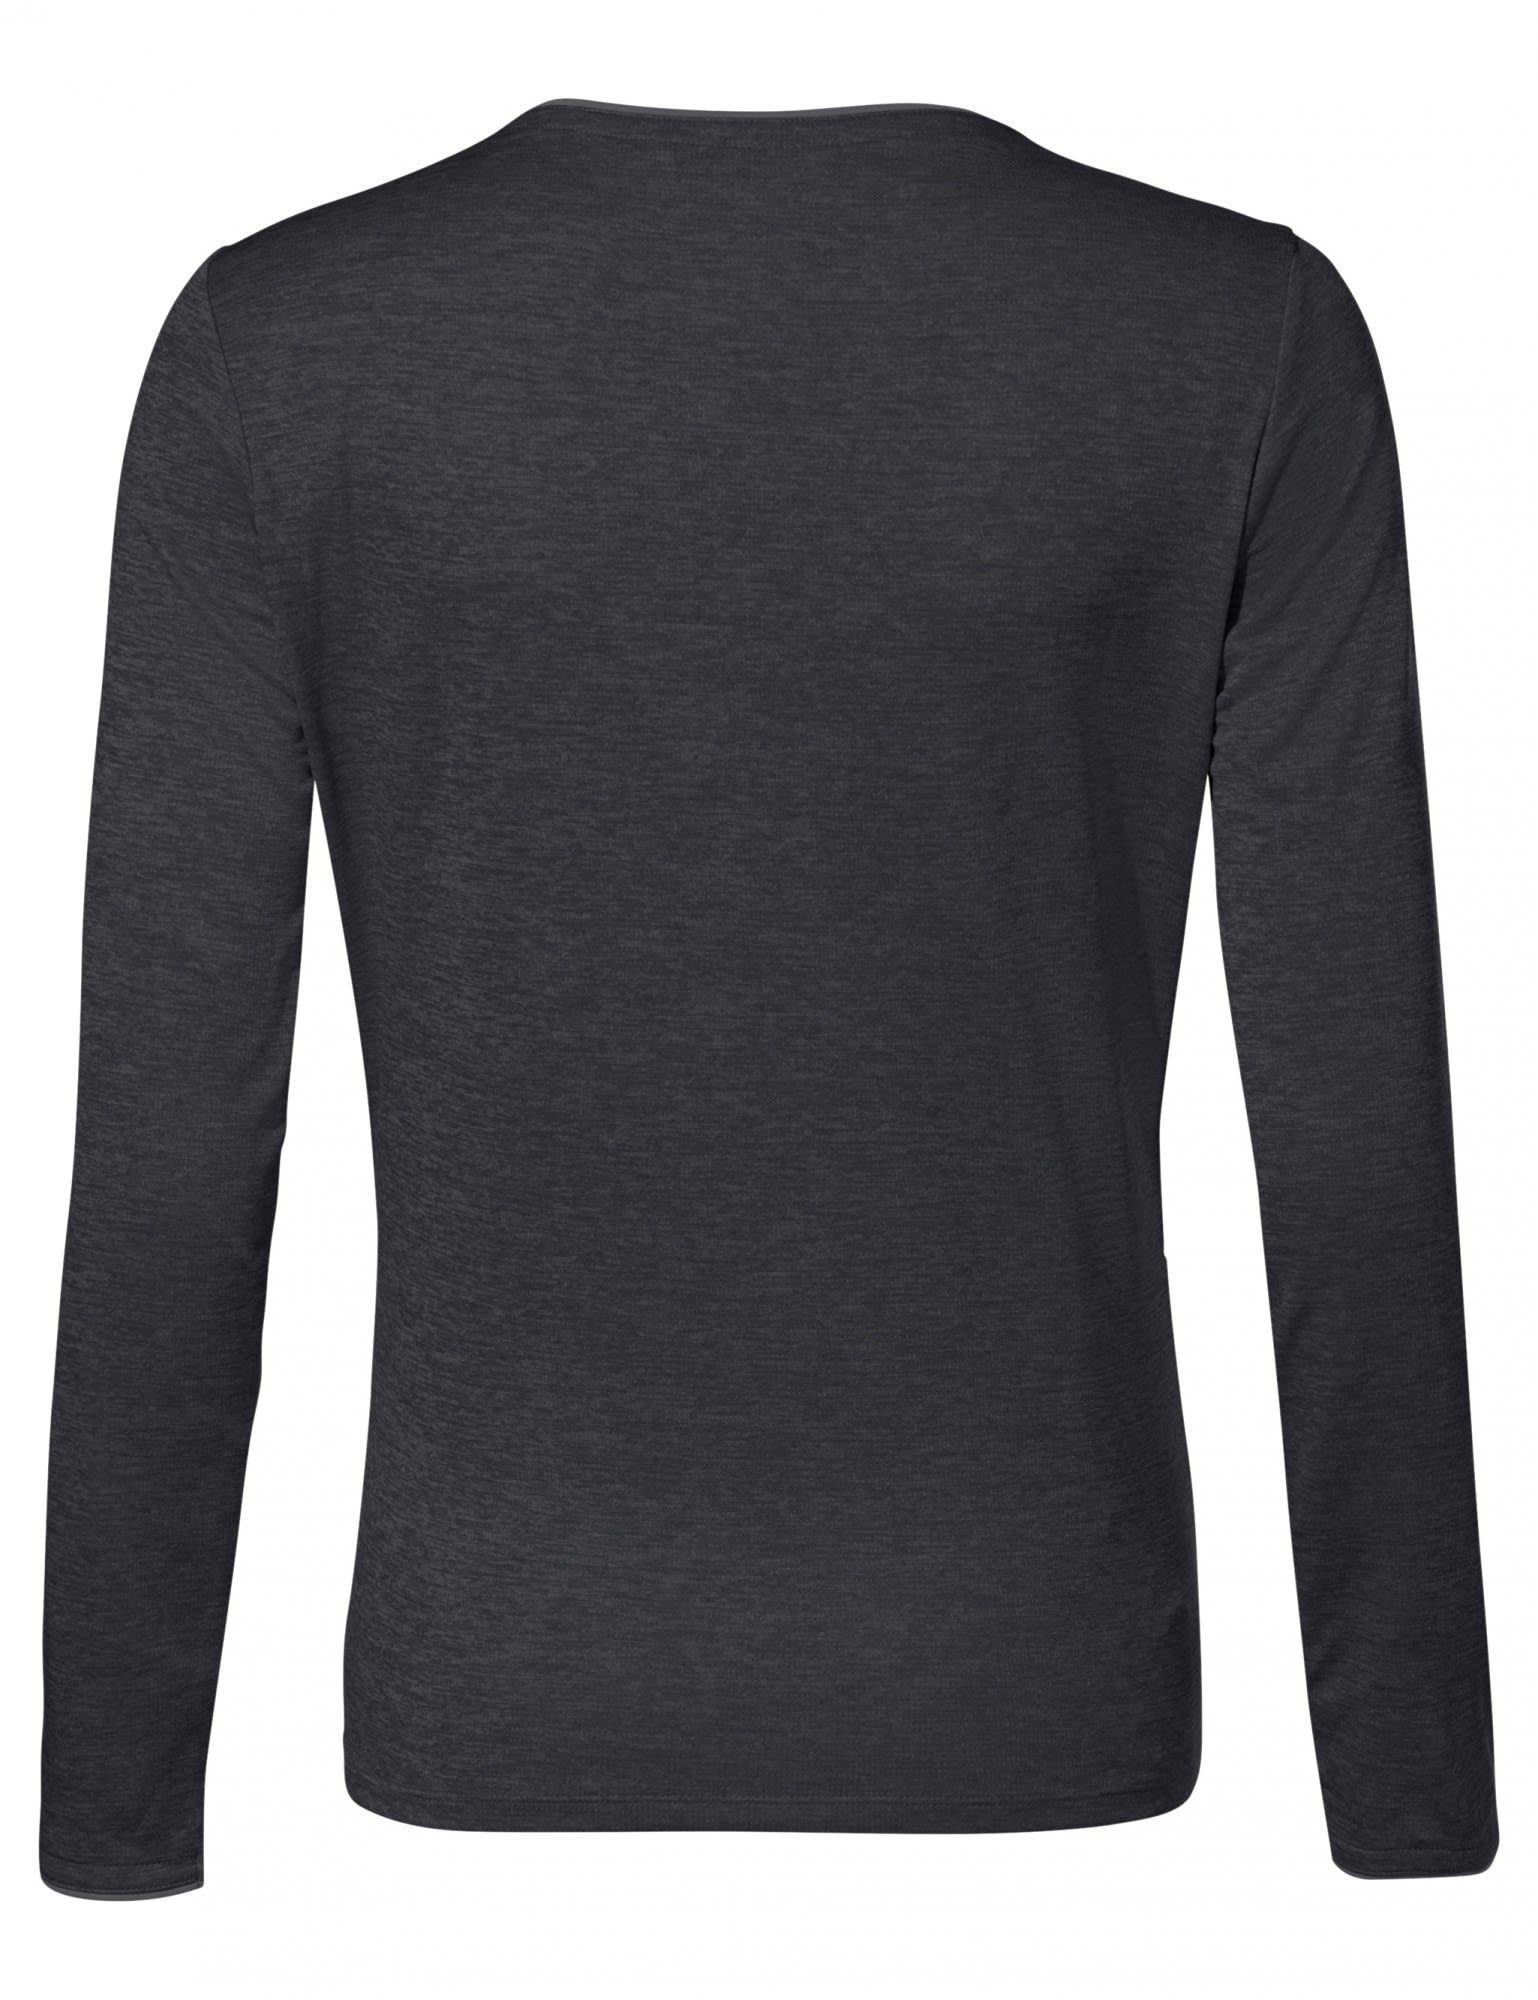 Womens Black VAUDE T-shirt Damen Long-sleeve Essential Langarmshirt Vaude